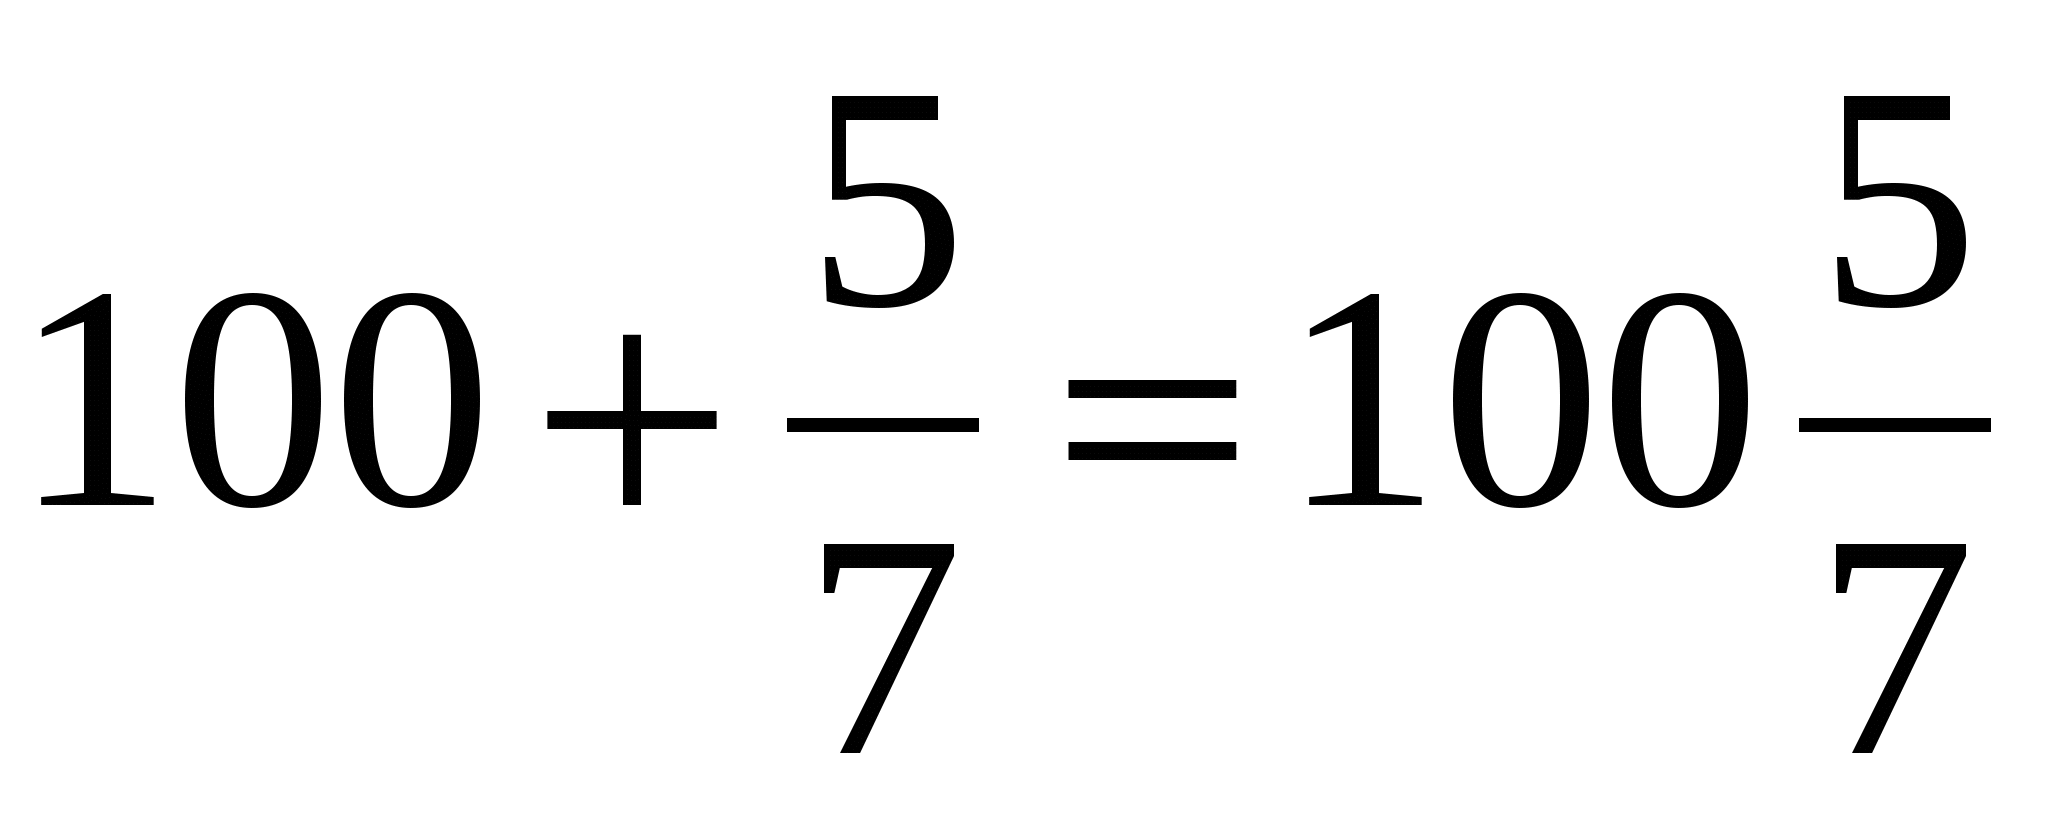 Разработка урока математики для 5 класса в свете ФГОС по теме: «Смешанные числа»